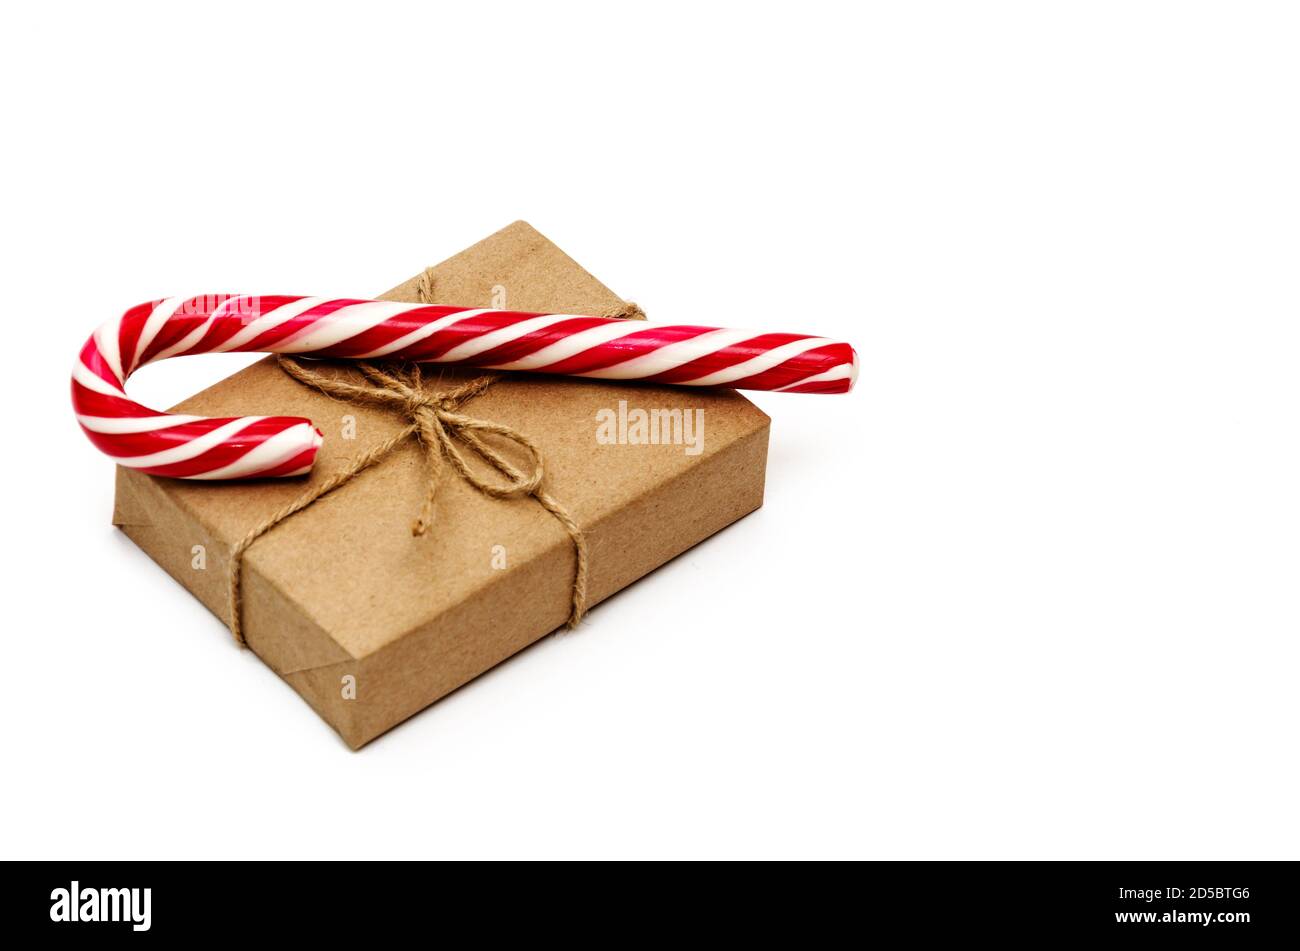 Boîte cadeau de Noël emballée dans du papier kraft attaché avec de la ficelle et de la canne à sucre sur fond blanc. Concept de Noël, d'hiver et de nouvel an Banque D'Images